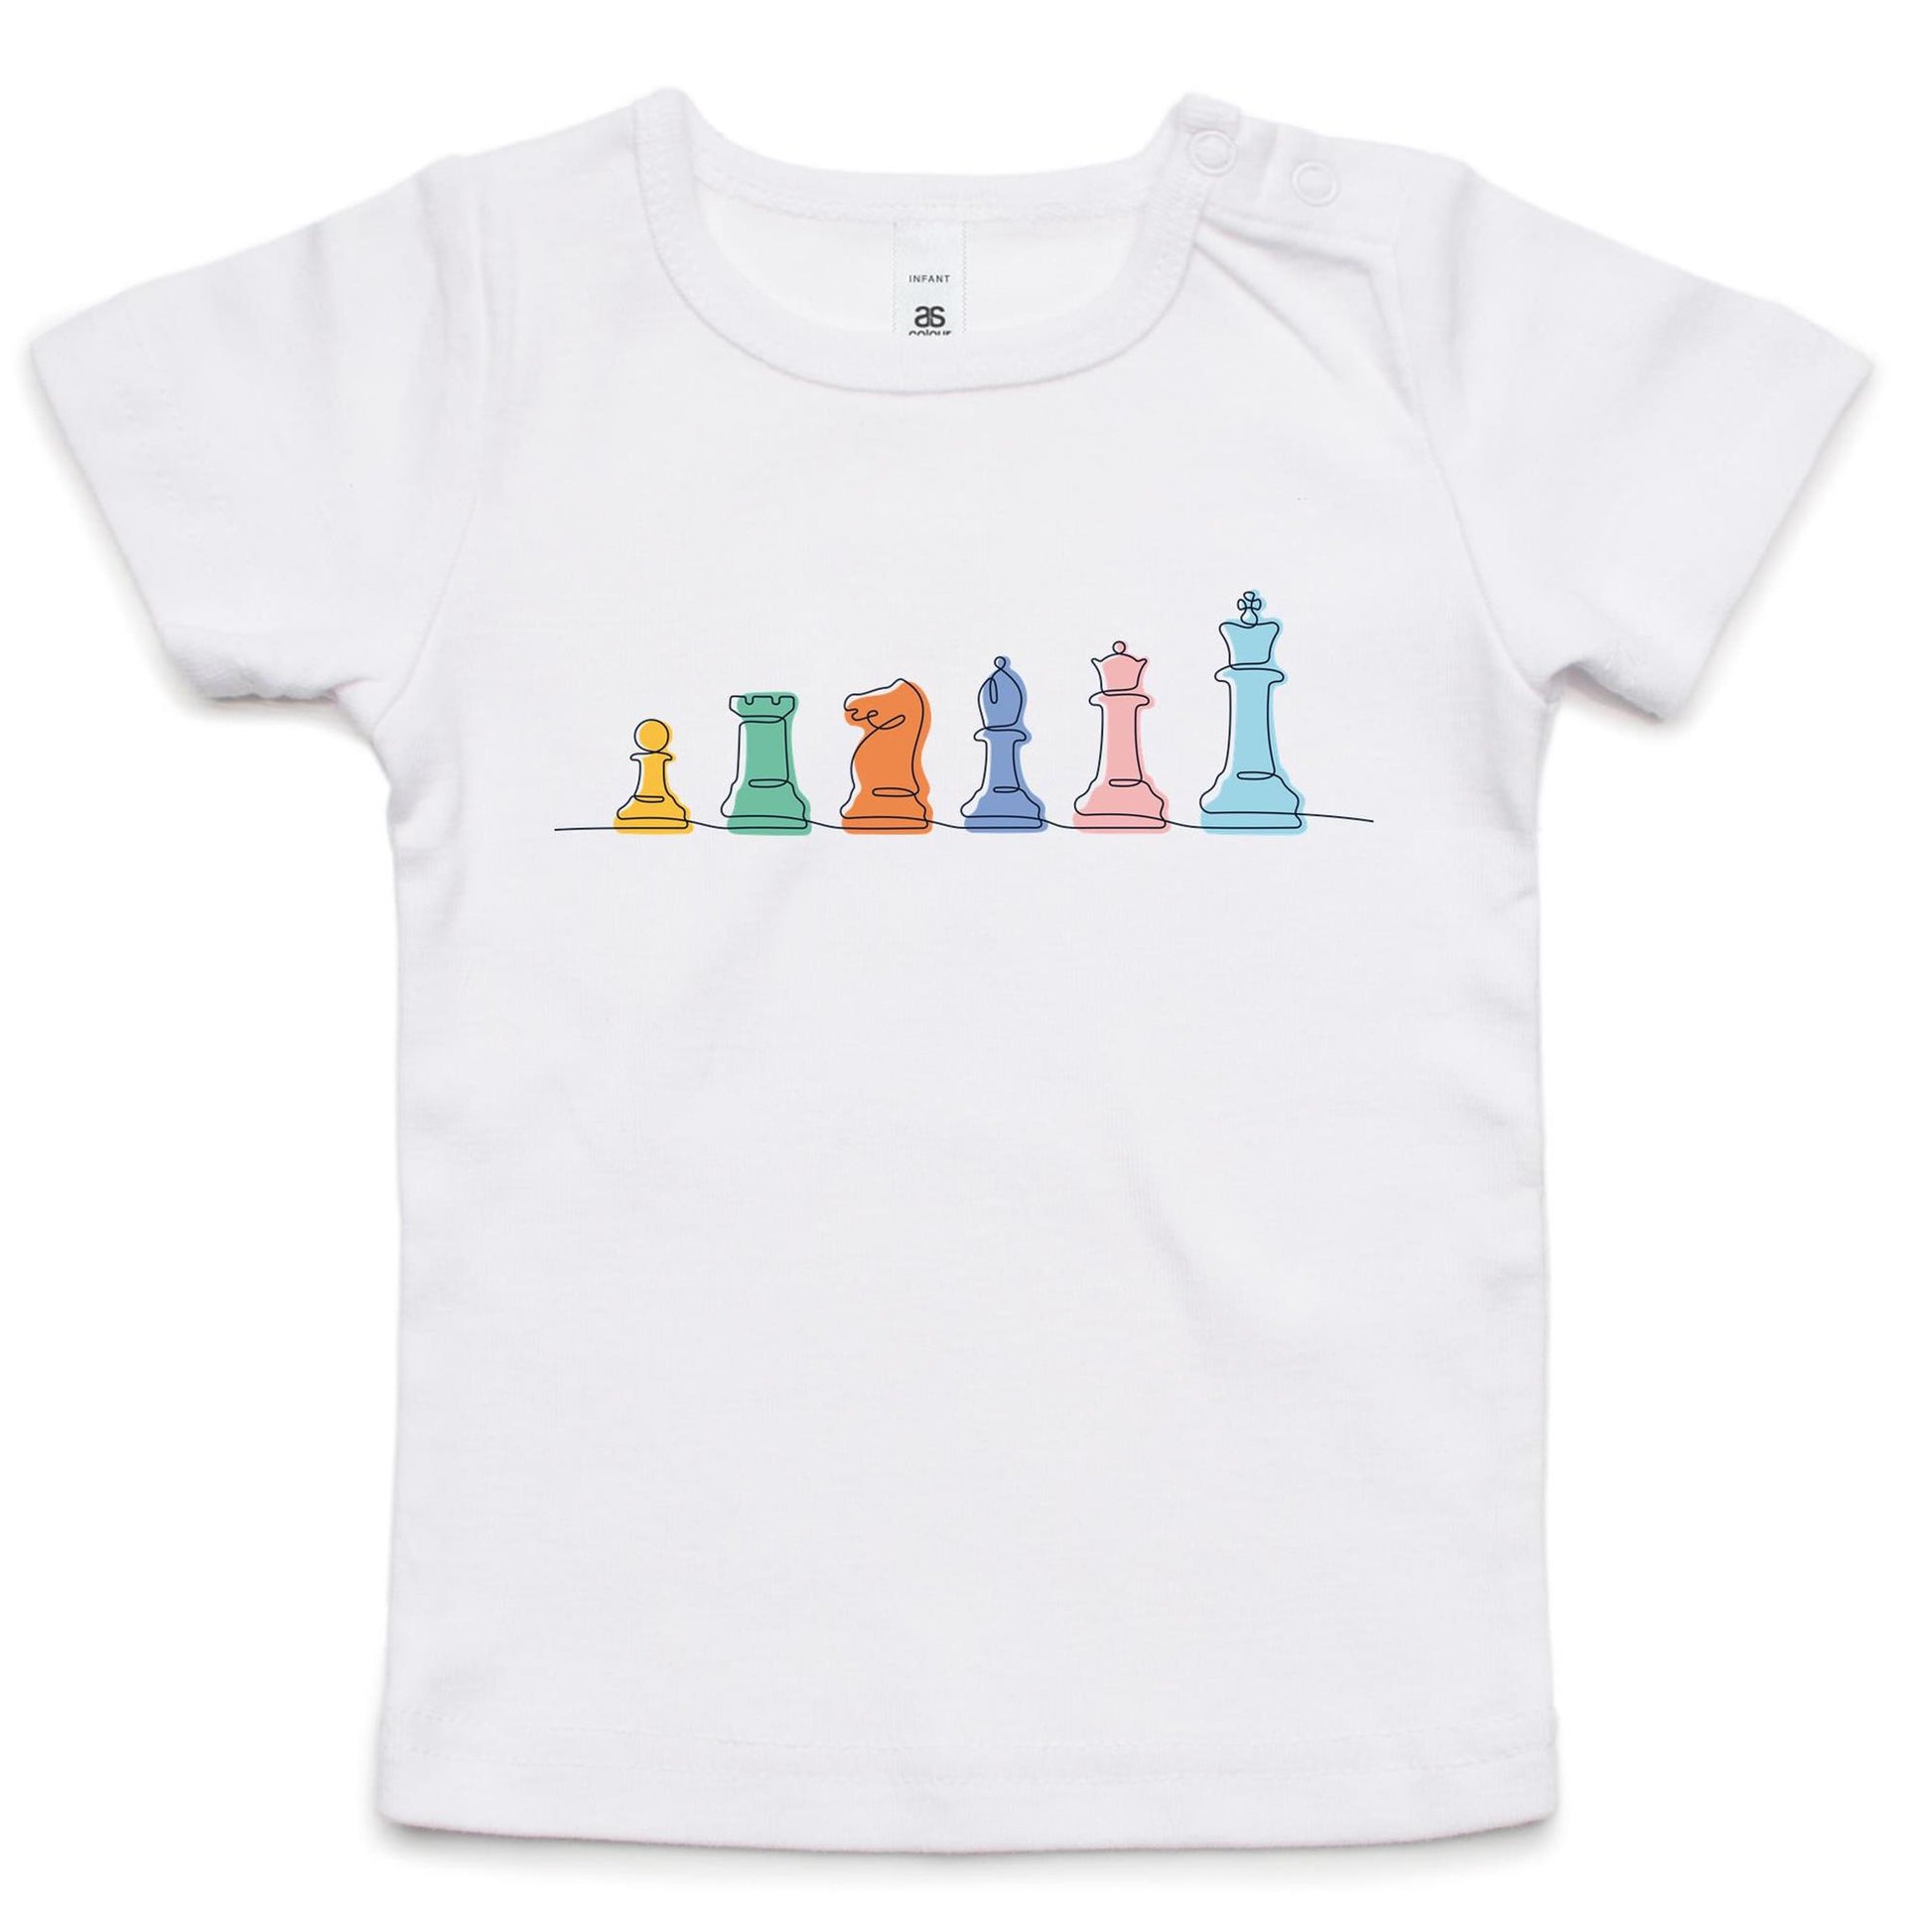 Chess - Baby T-shirt White Baby T-shirt Chess Games